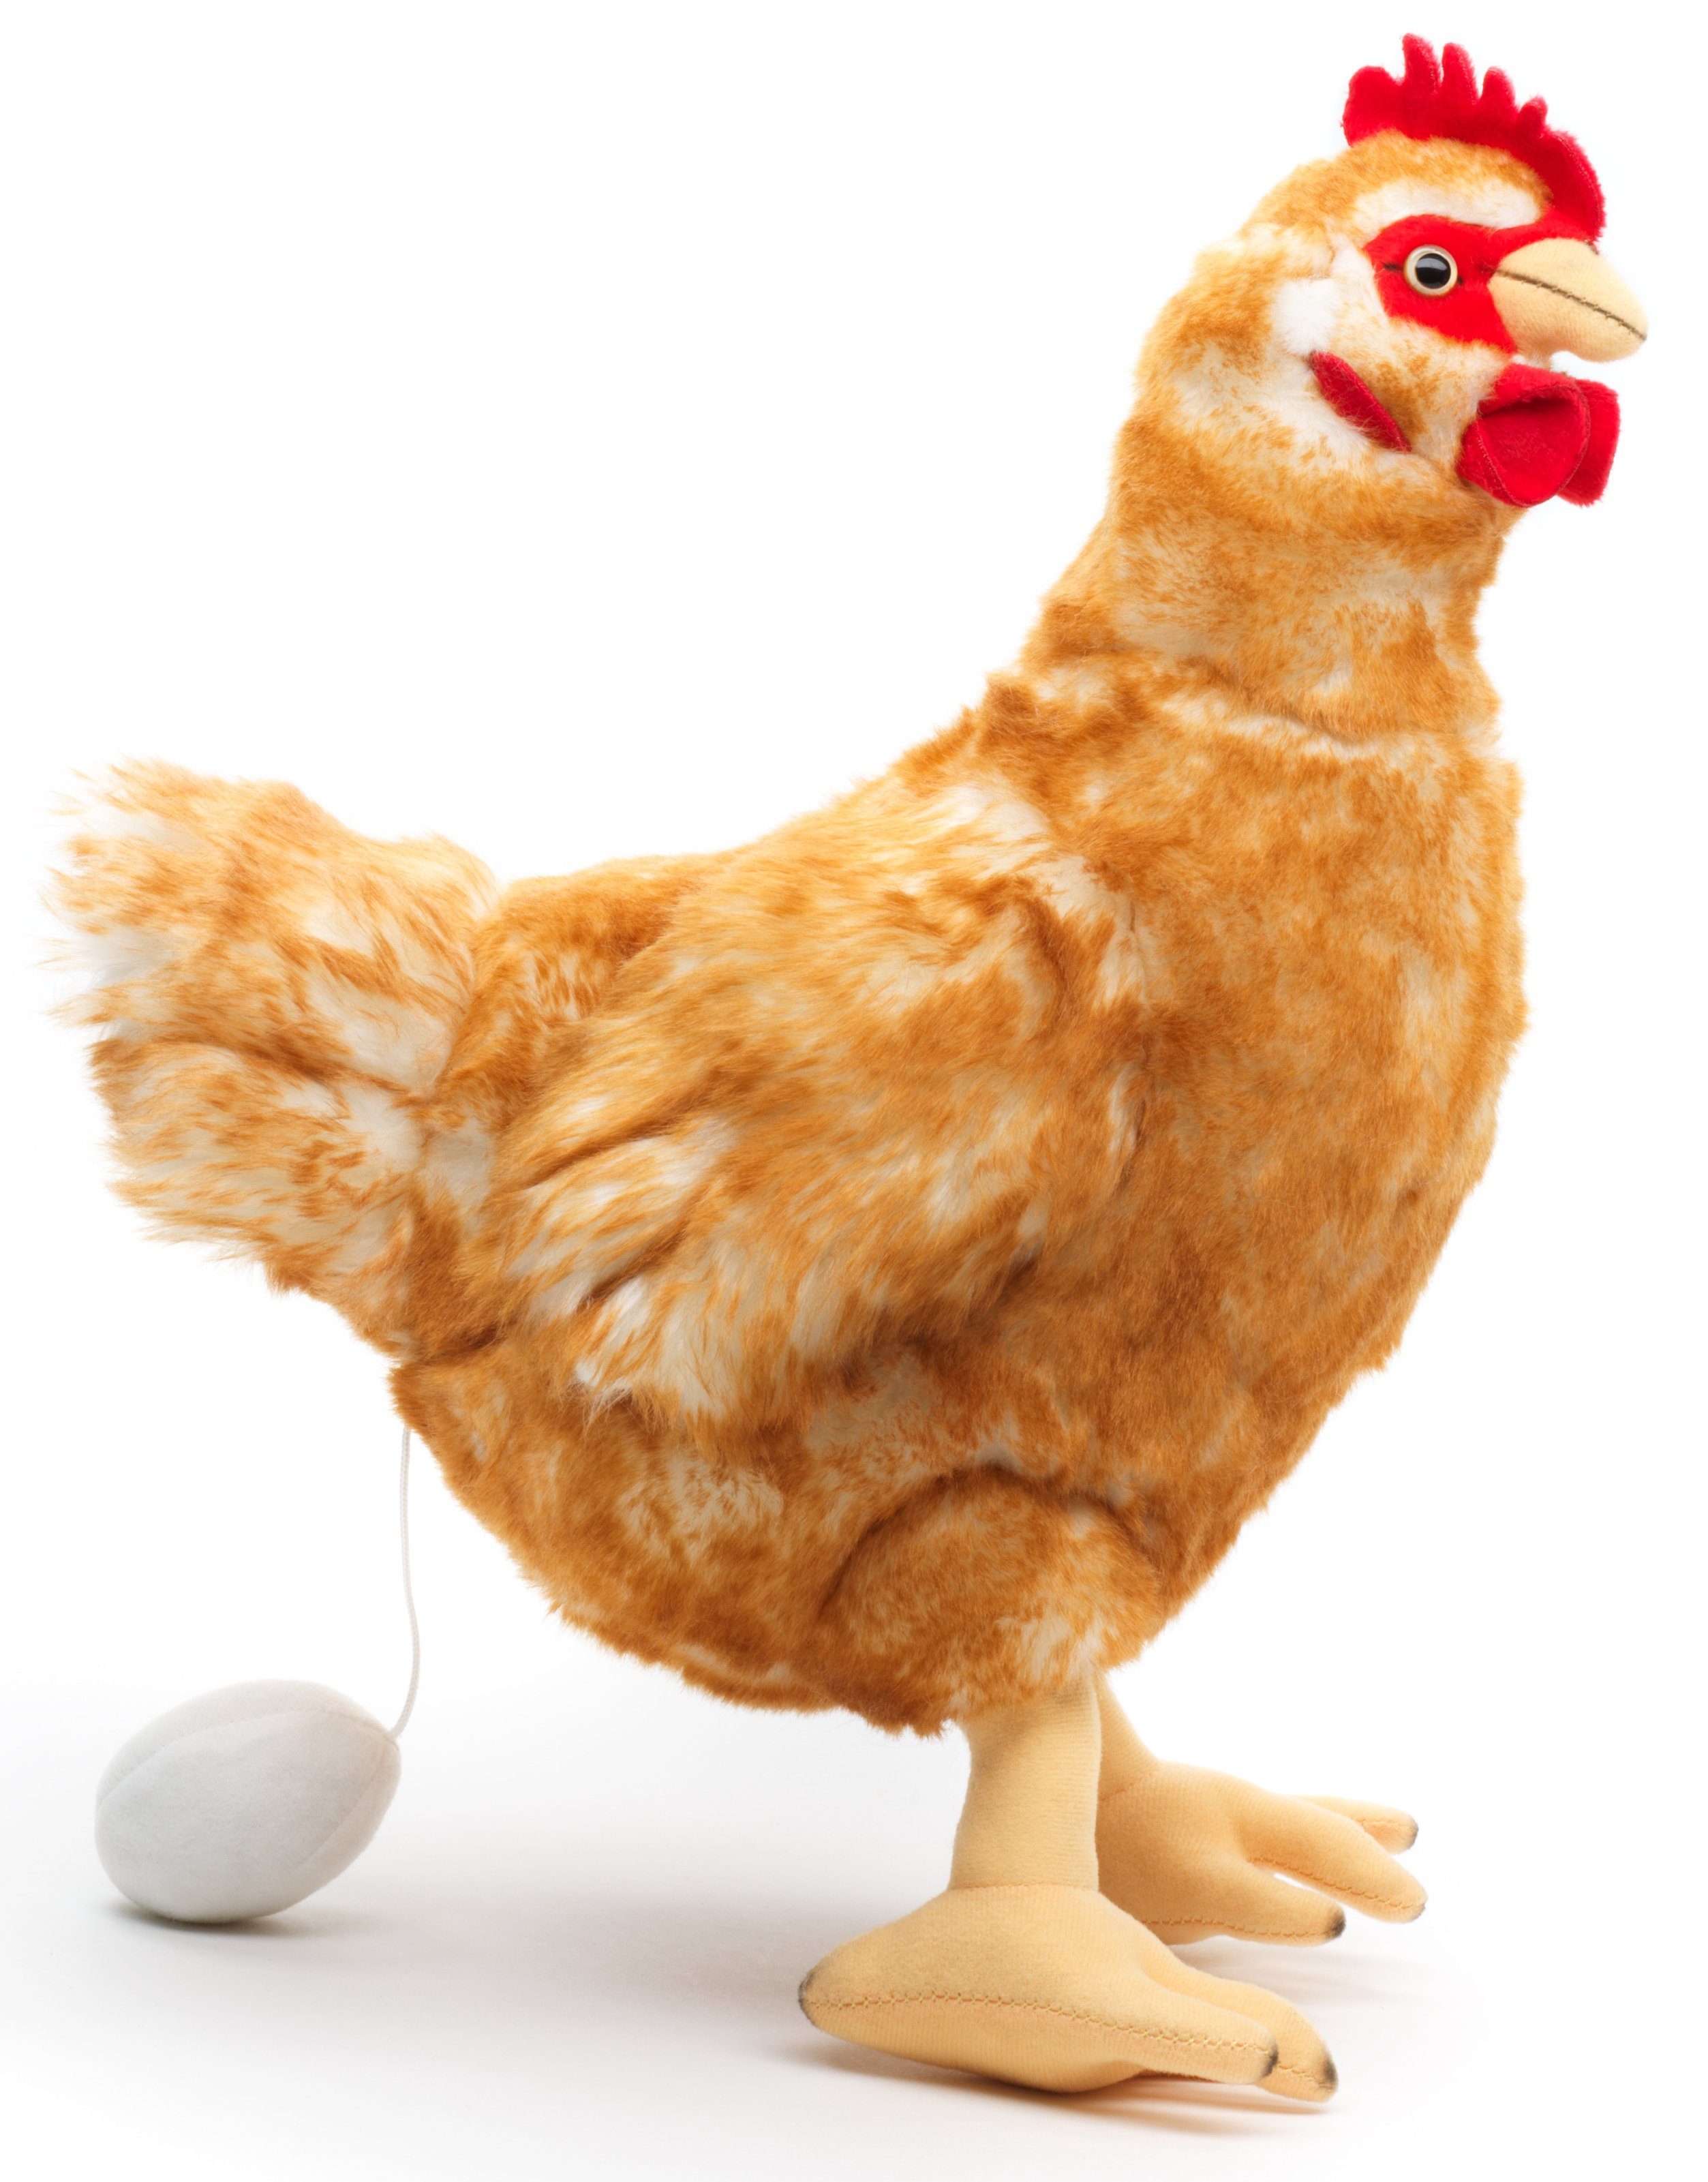 Uni-Toys Kuscheltier Henne mit Ei - versch. Farben - 37 cm (Höhe) - Plüsch-Huhn, Plüschtier, zu 100 % recyceltes Füllmaterial braun